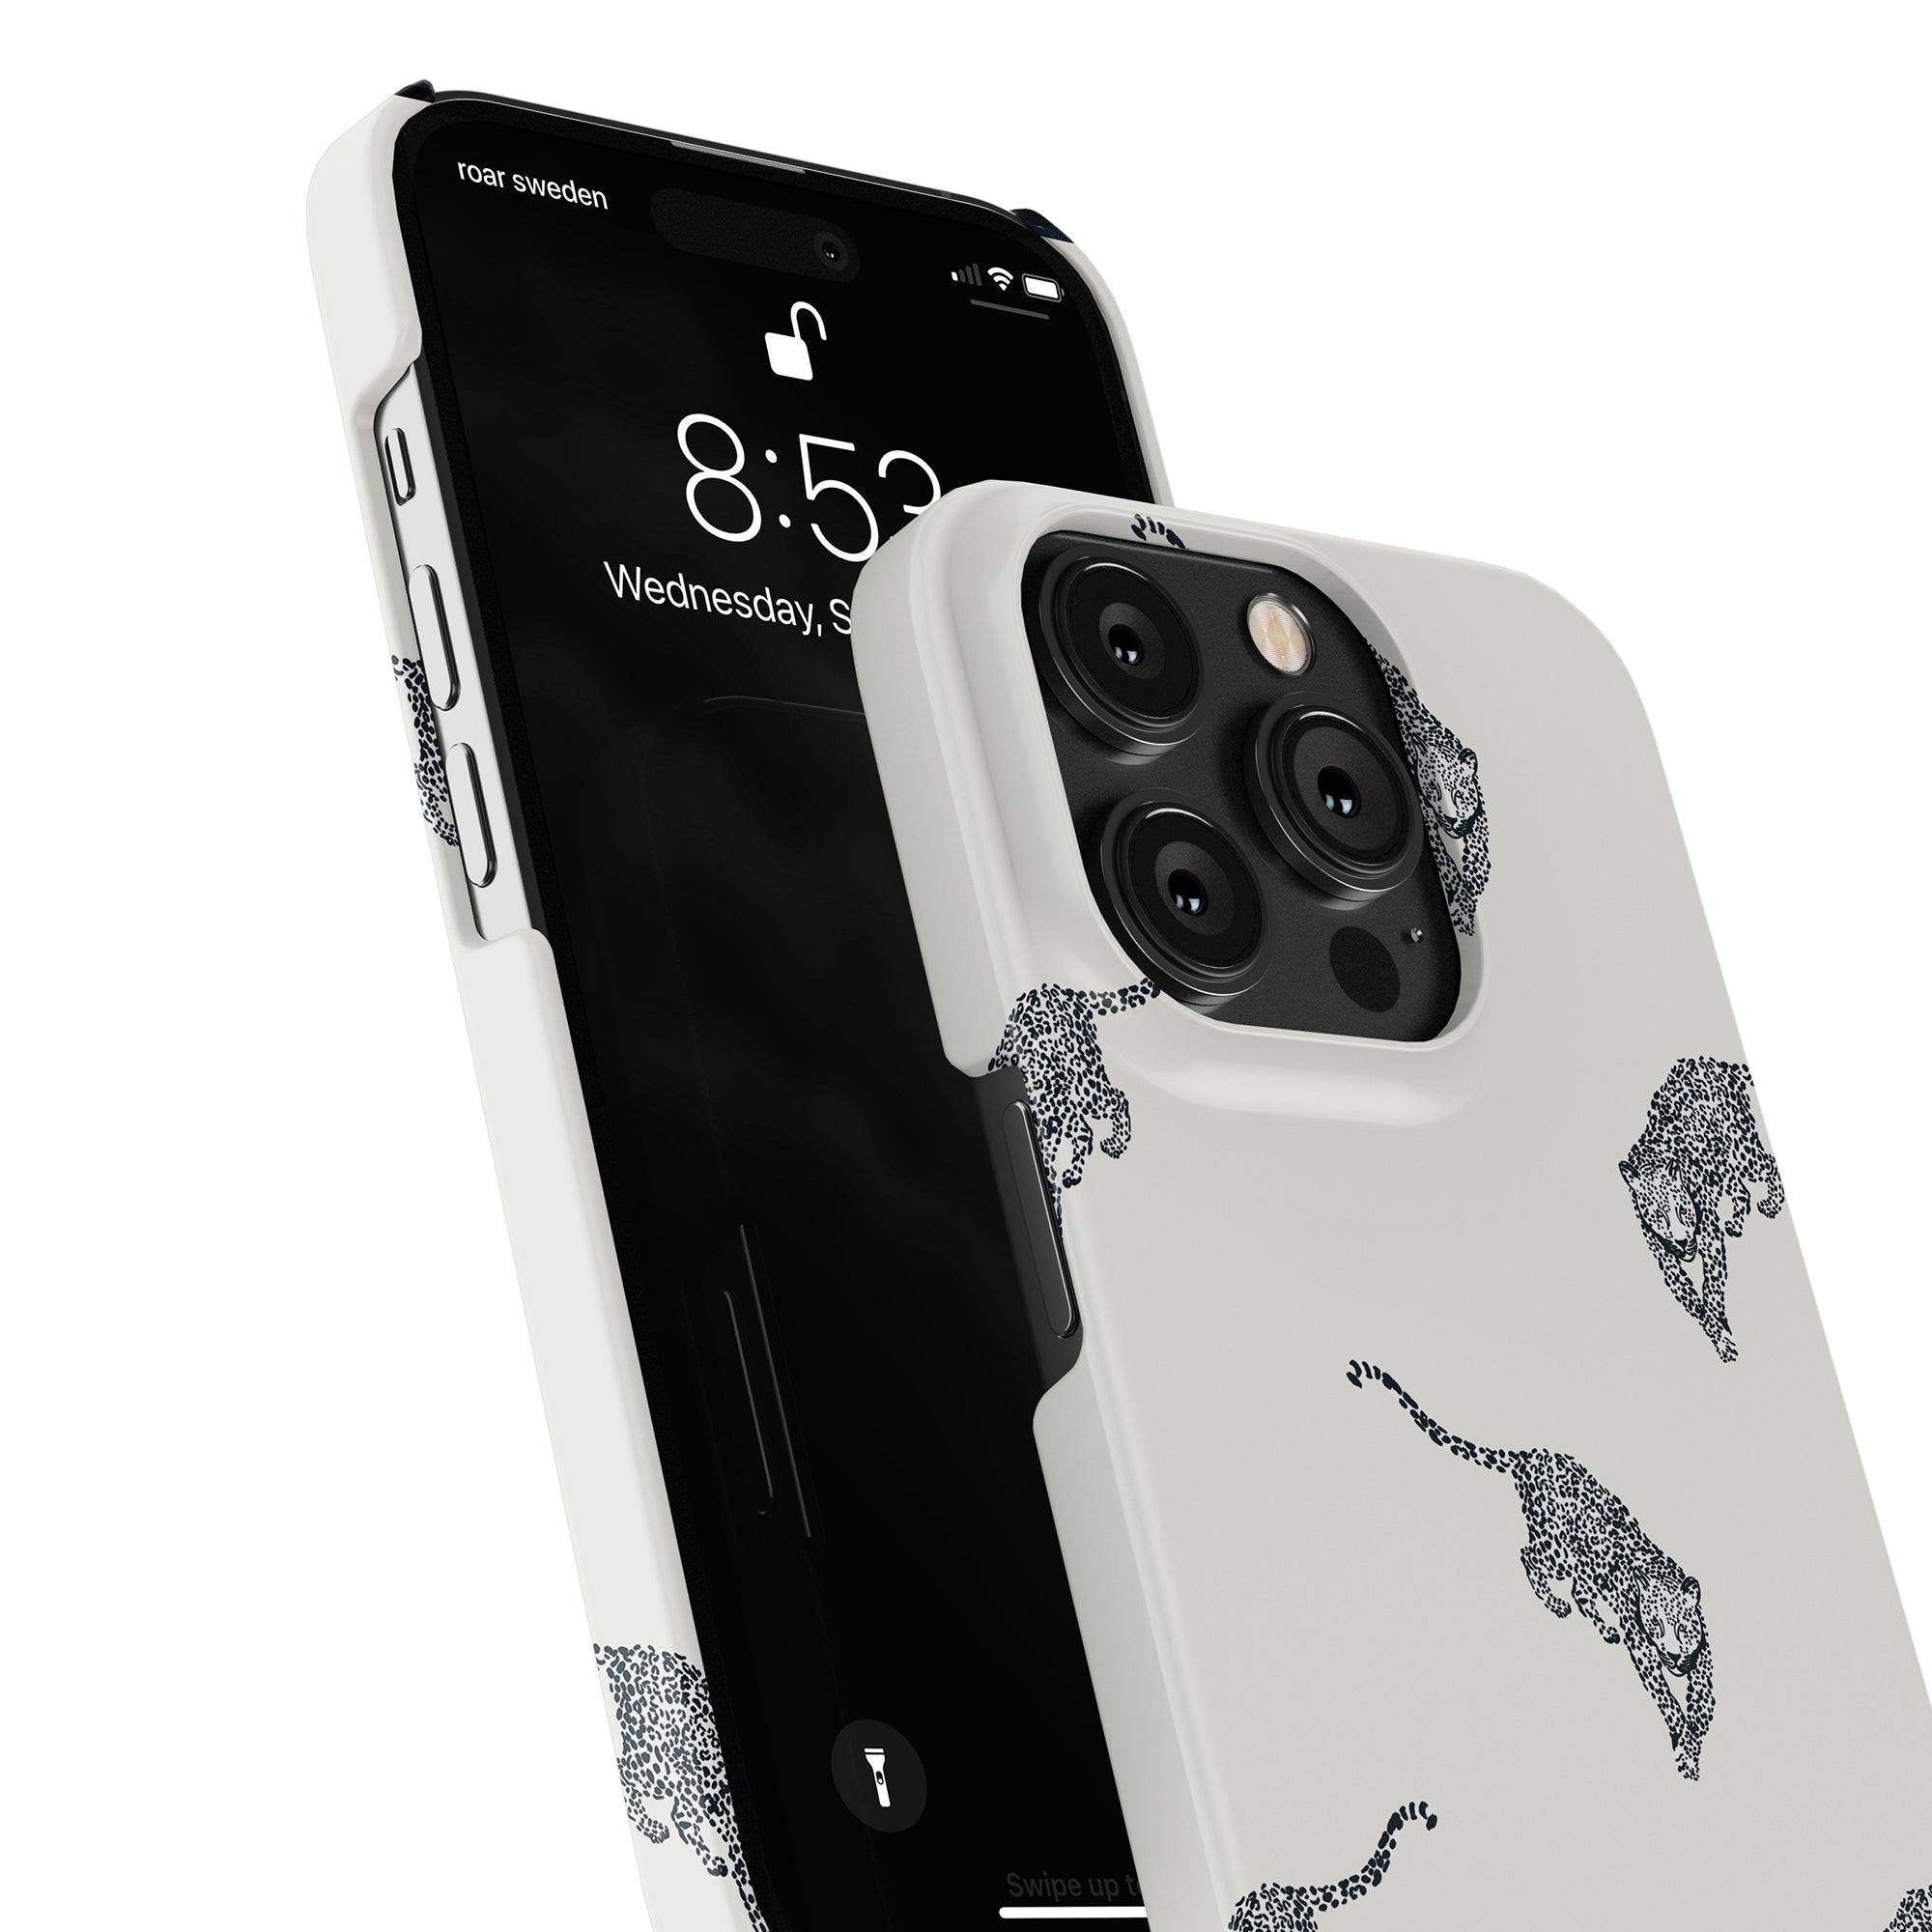 Beskrivning: Ett Kitty Deluxe - Slim case mobilskal med en svart katt på.